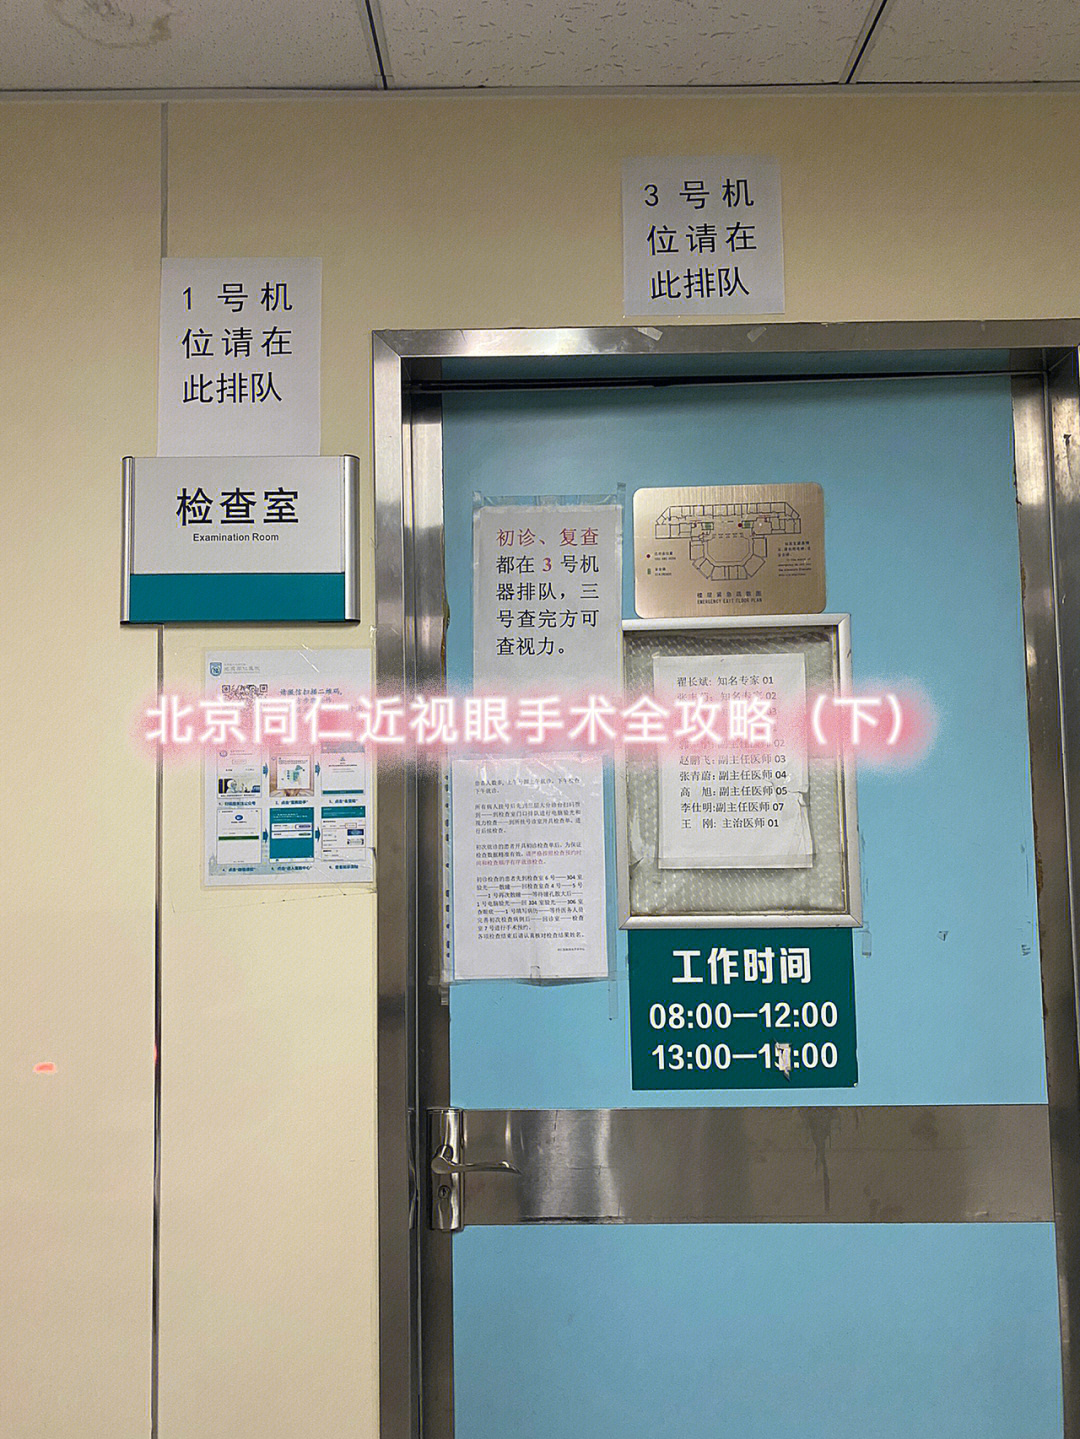 北京同仁医院就诊卡图片